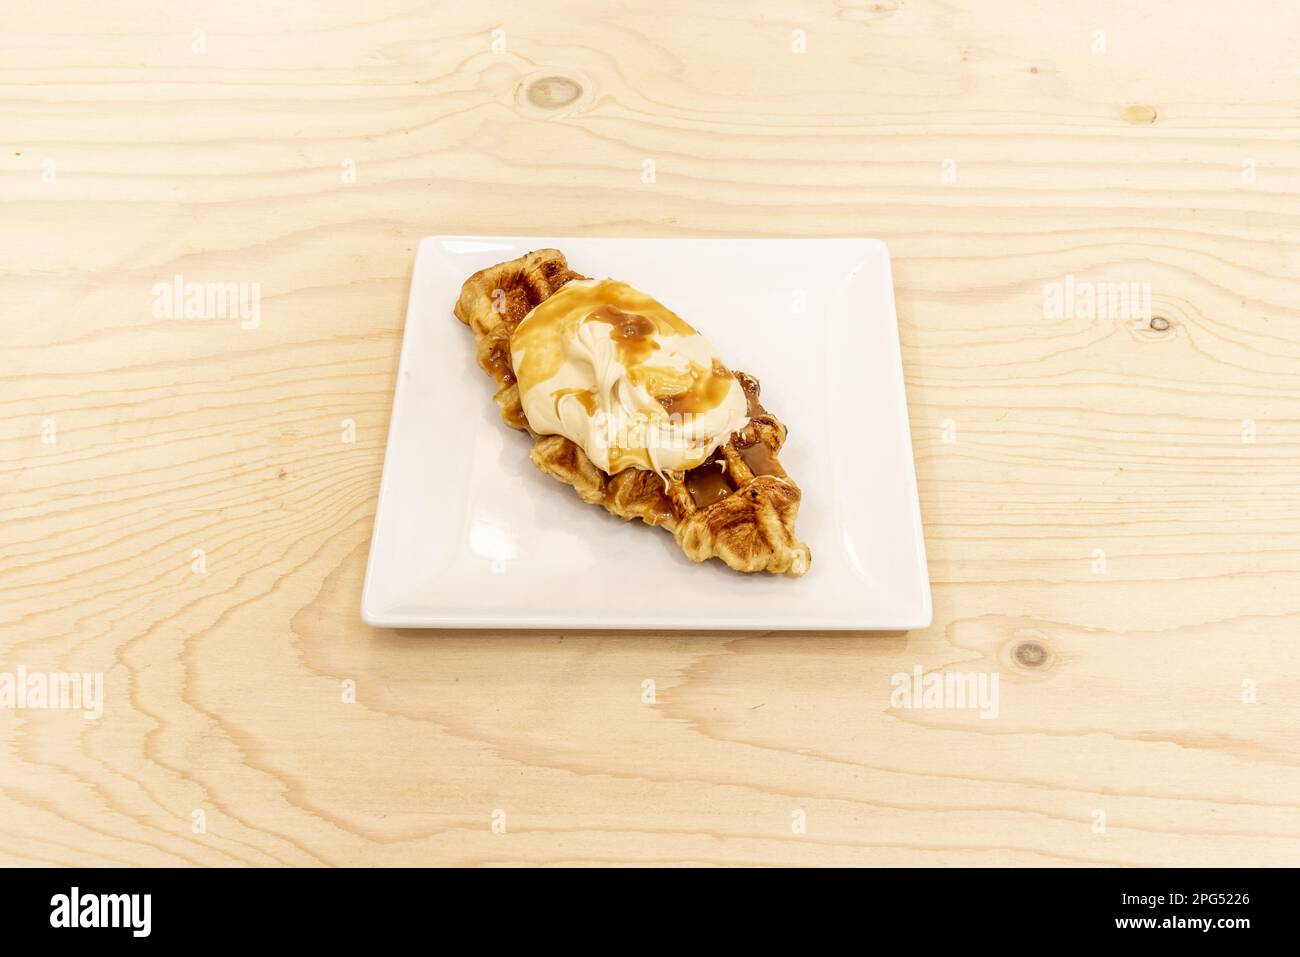 Ein frisch gebackenes Croissant mit Sahne und Dulce de leche Sirup auf einem unlackierten Holztisch Stockfoto